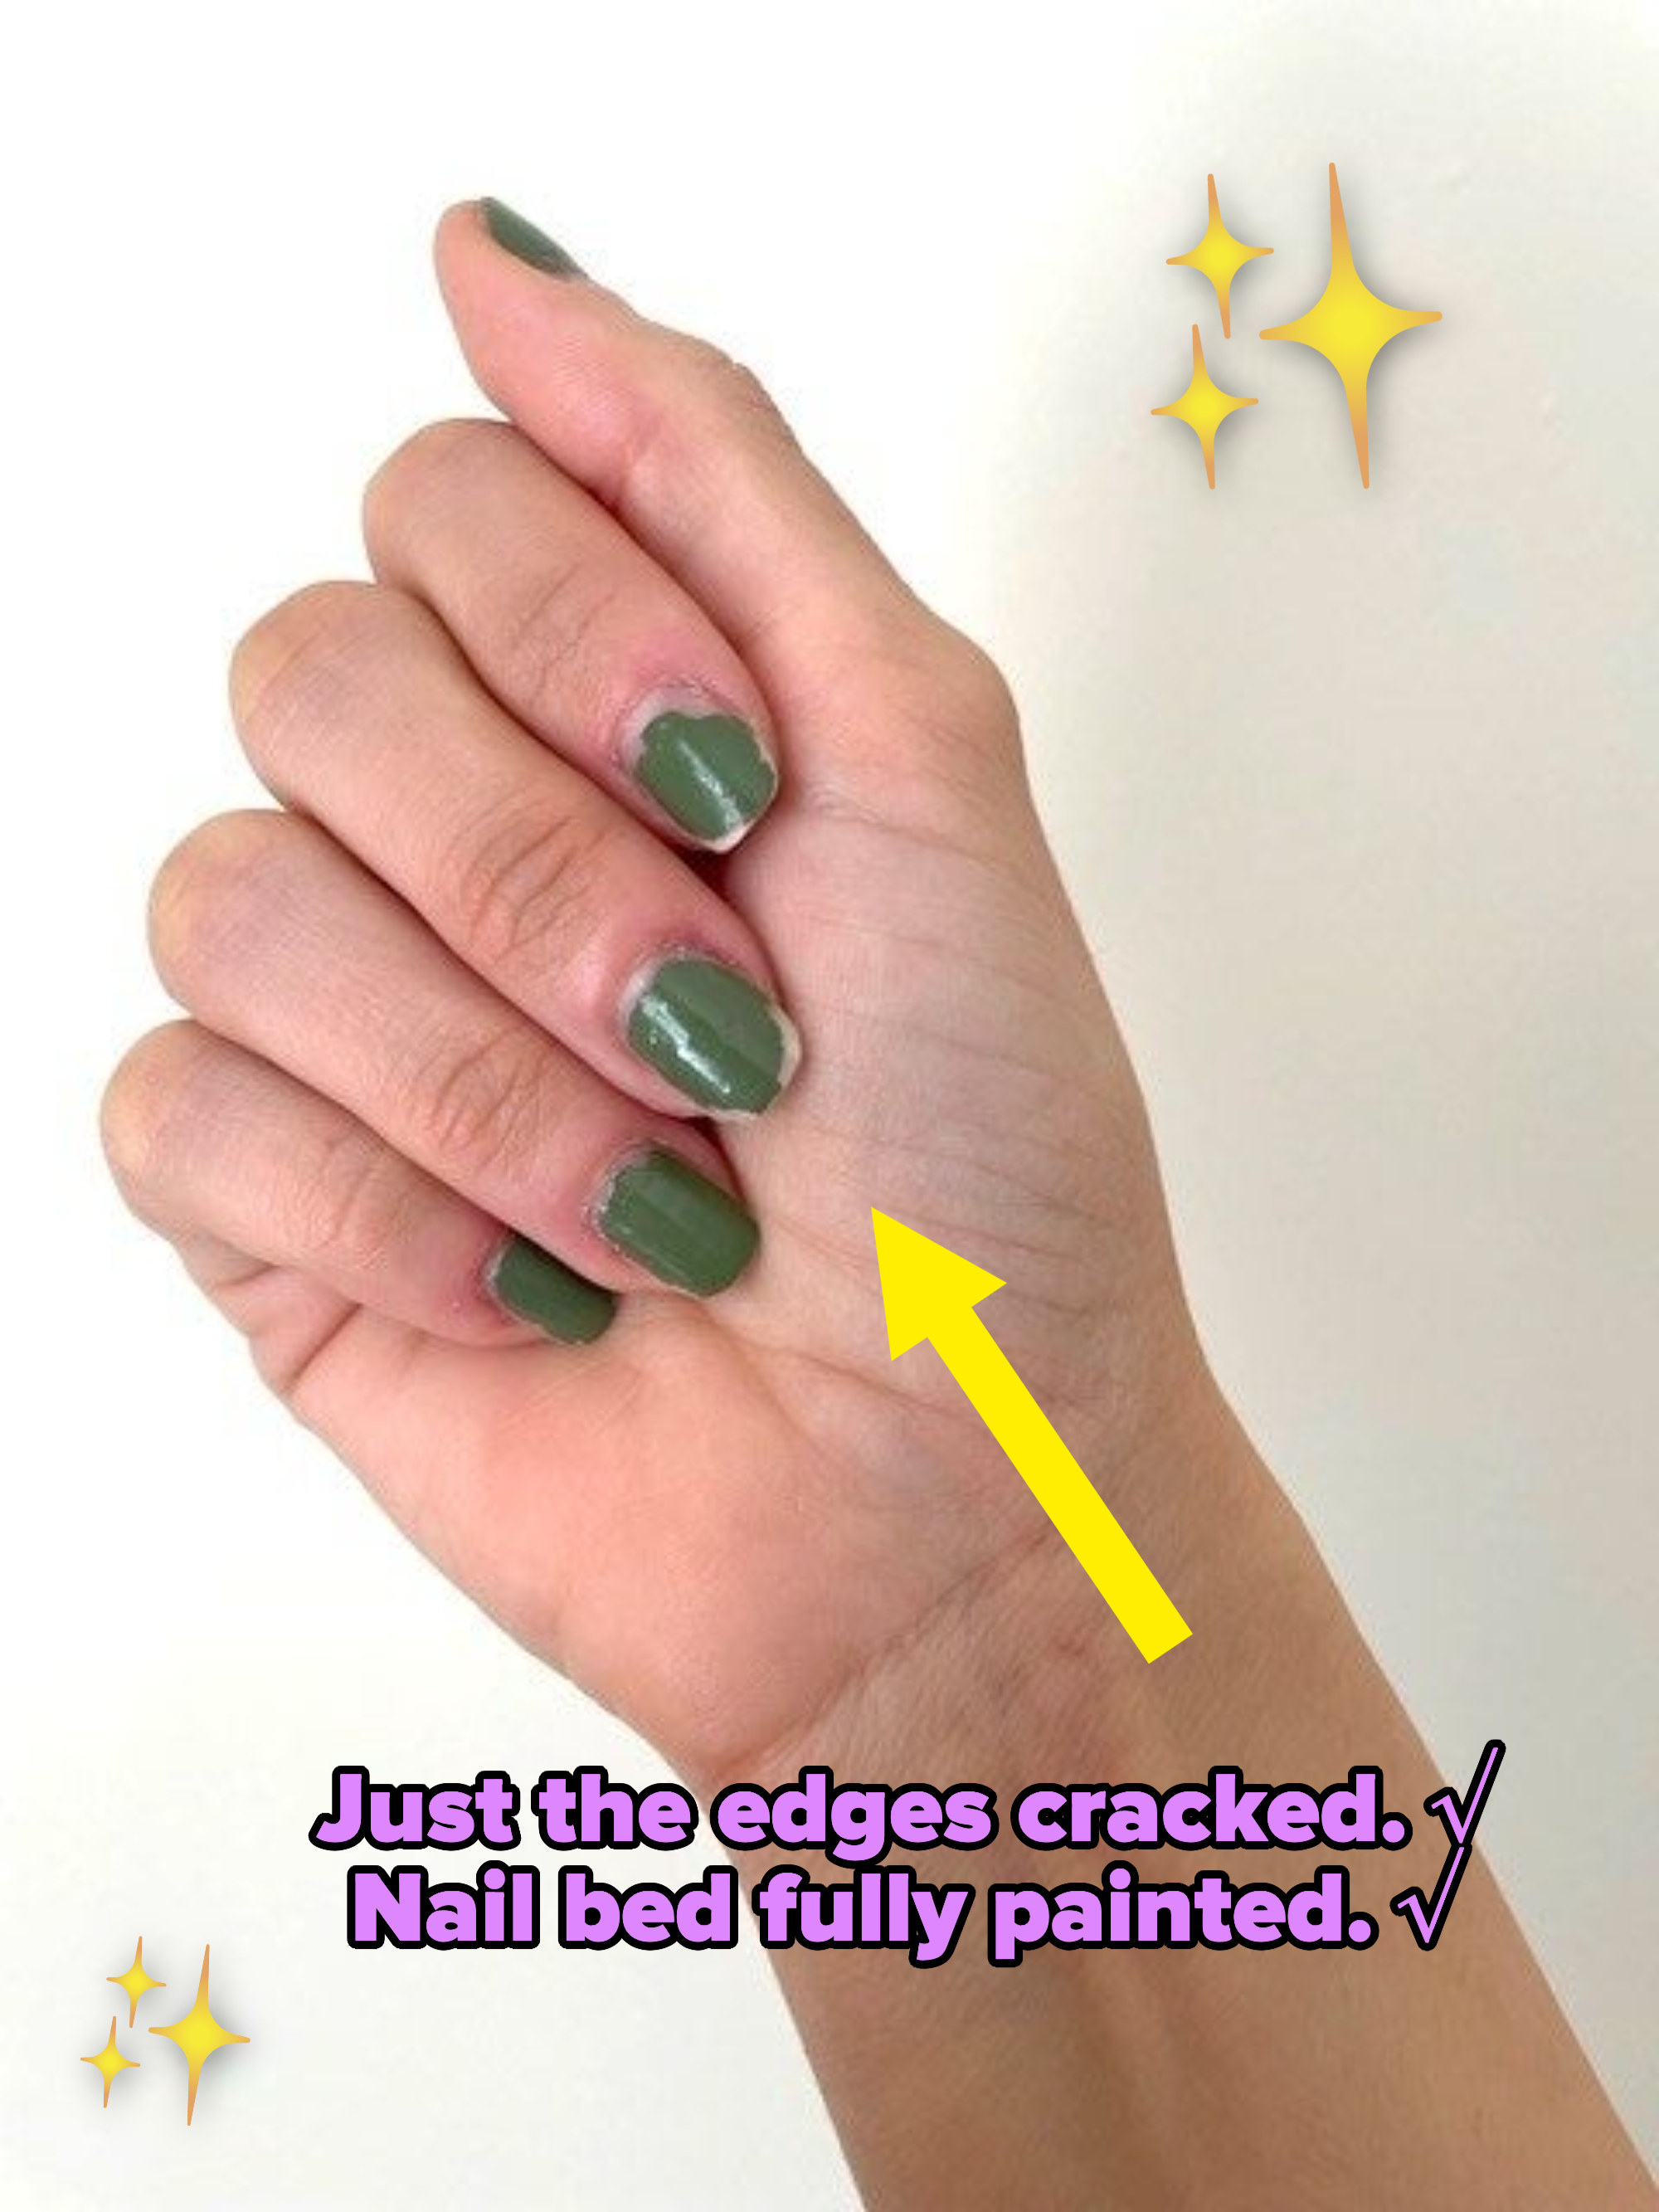 A closed hand showing green nail polish